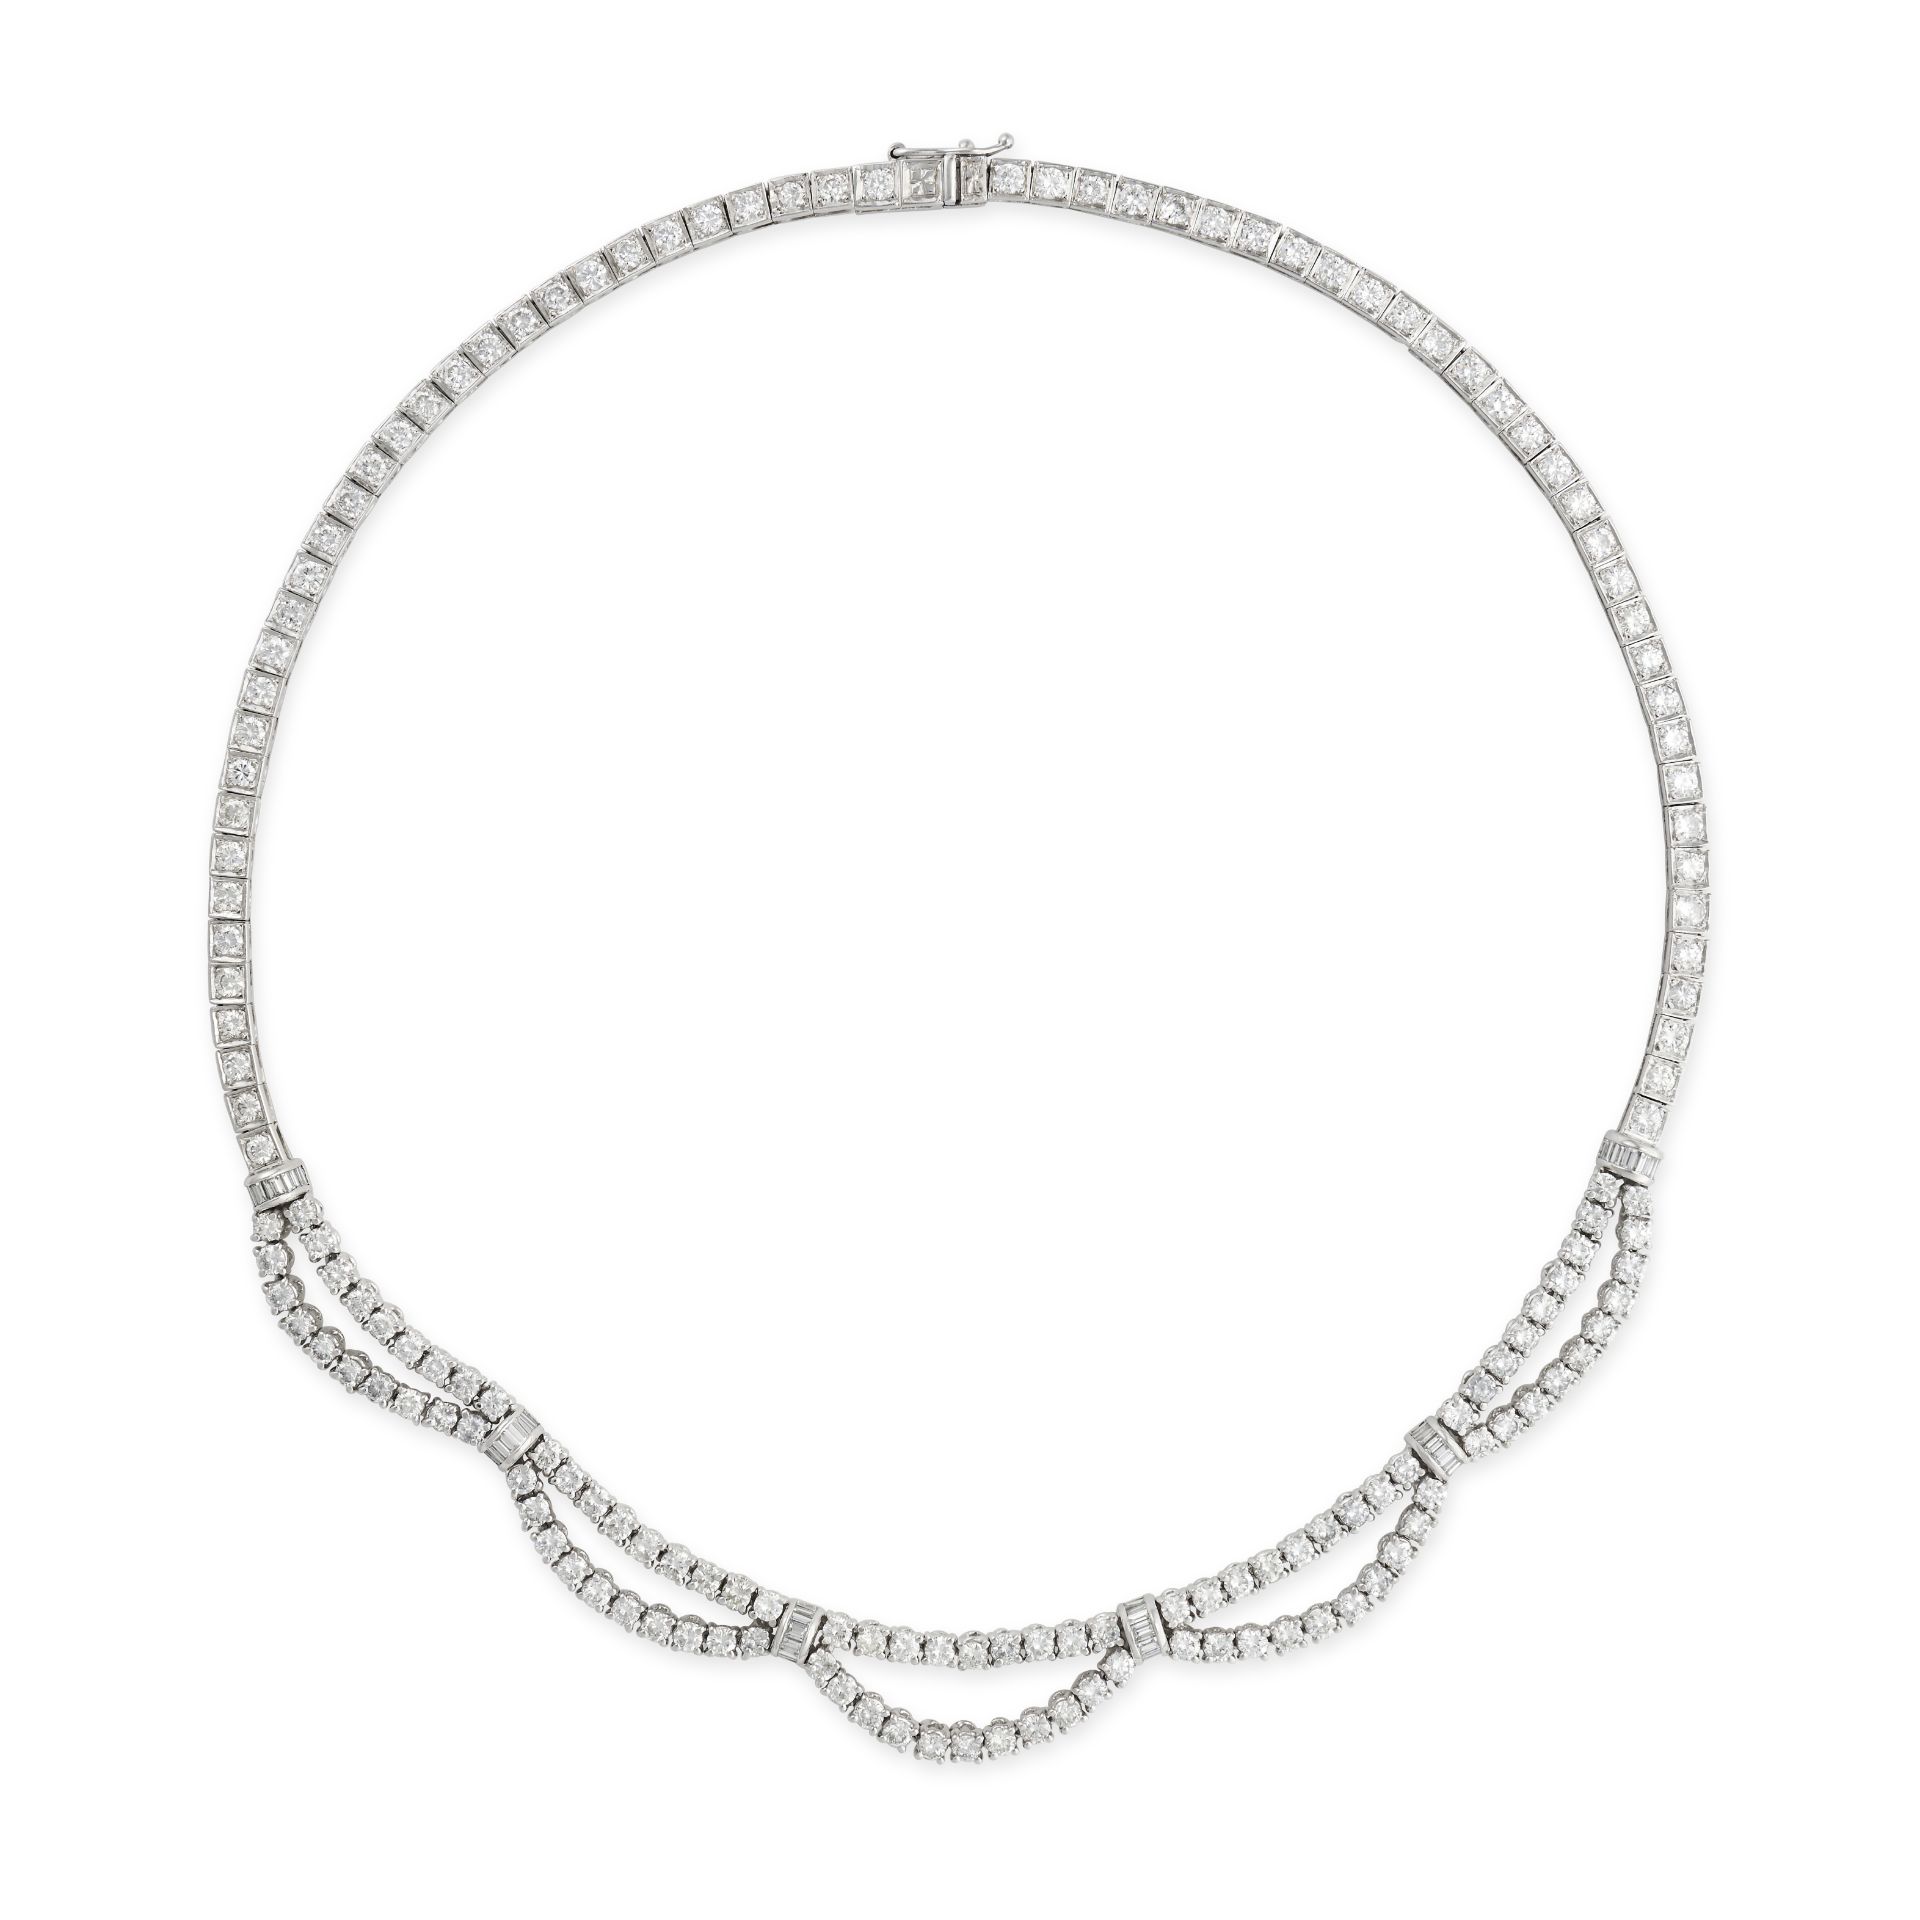 A DIAMOND NECKLACE in 18ct white gold, comprising a row of round brilliant cut diamonds, suspendi...